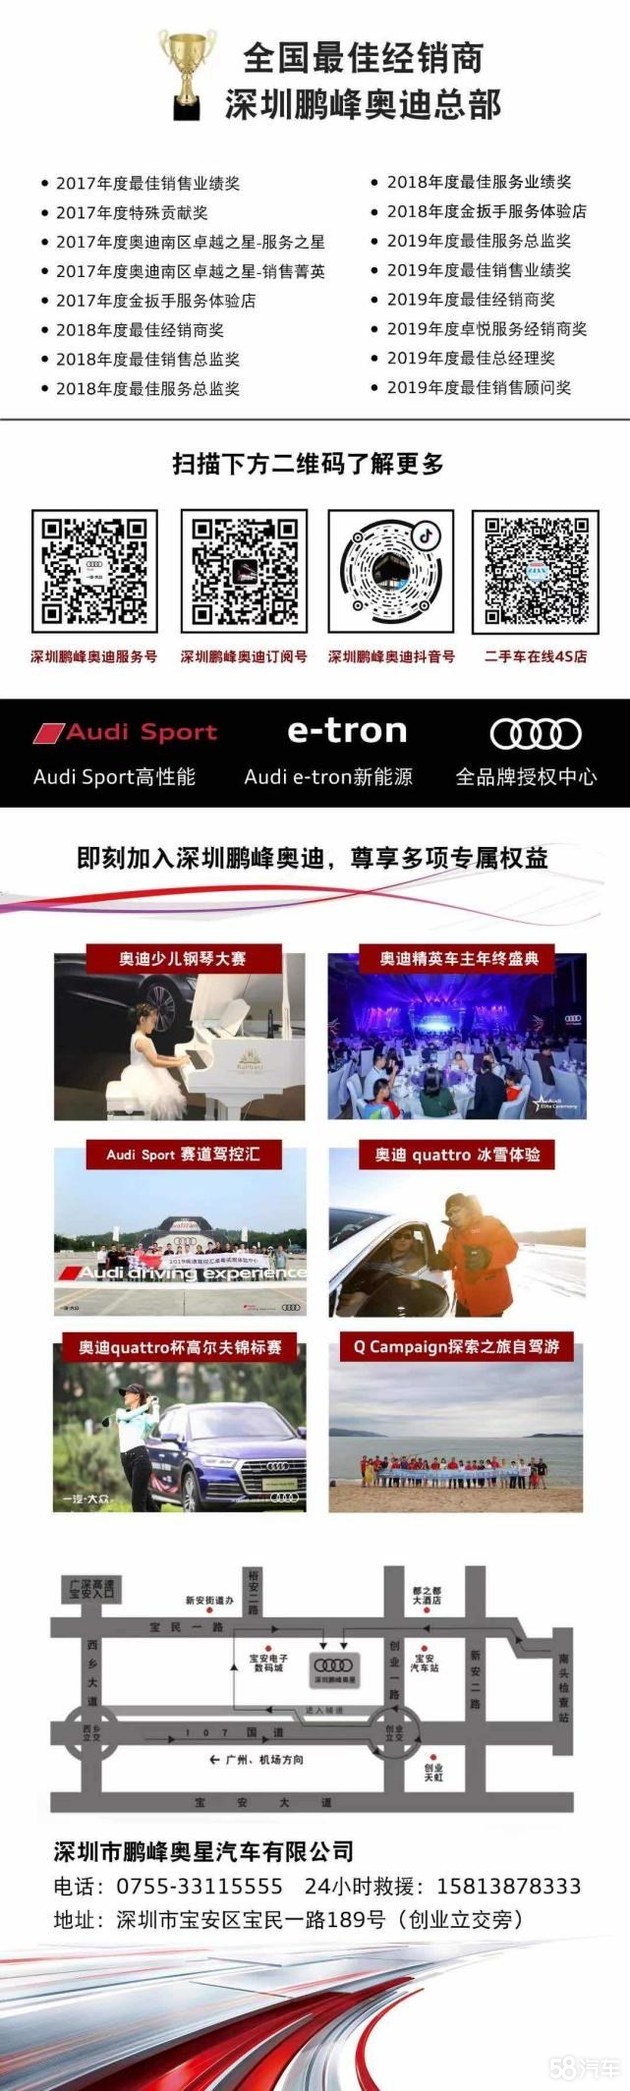 深圳鹏峰奥迪双十二购车狂欢节即将开启